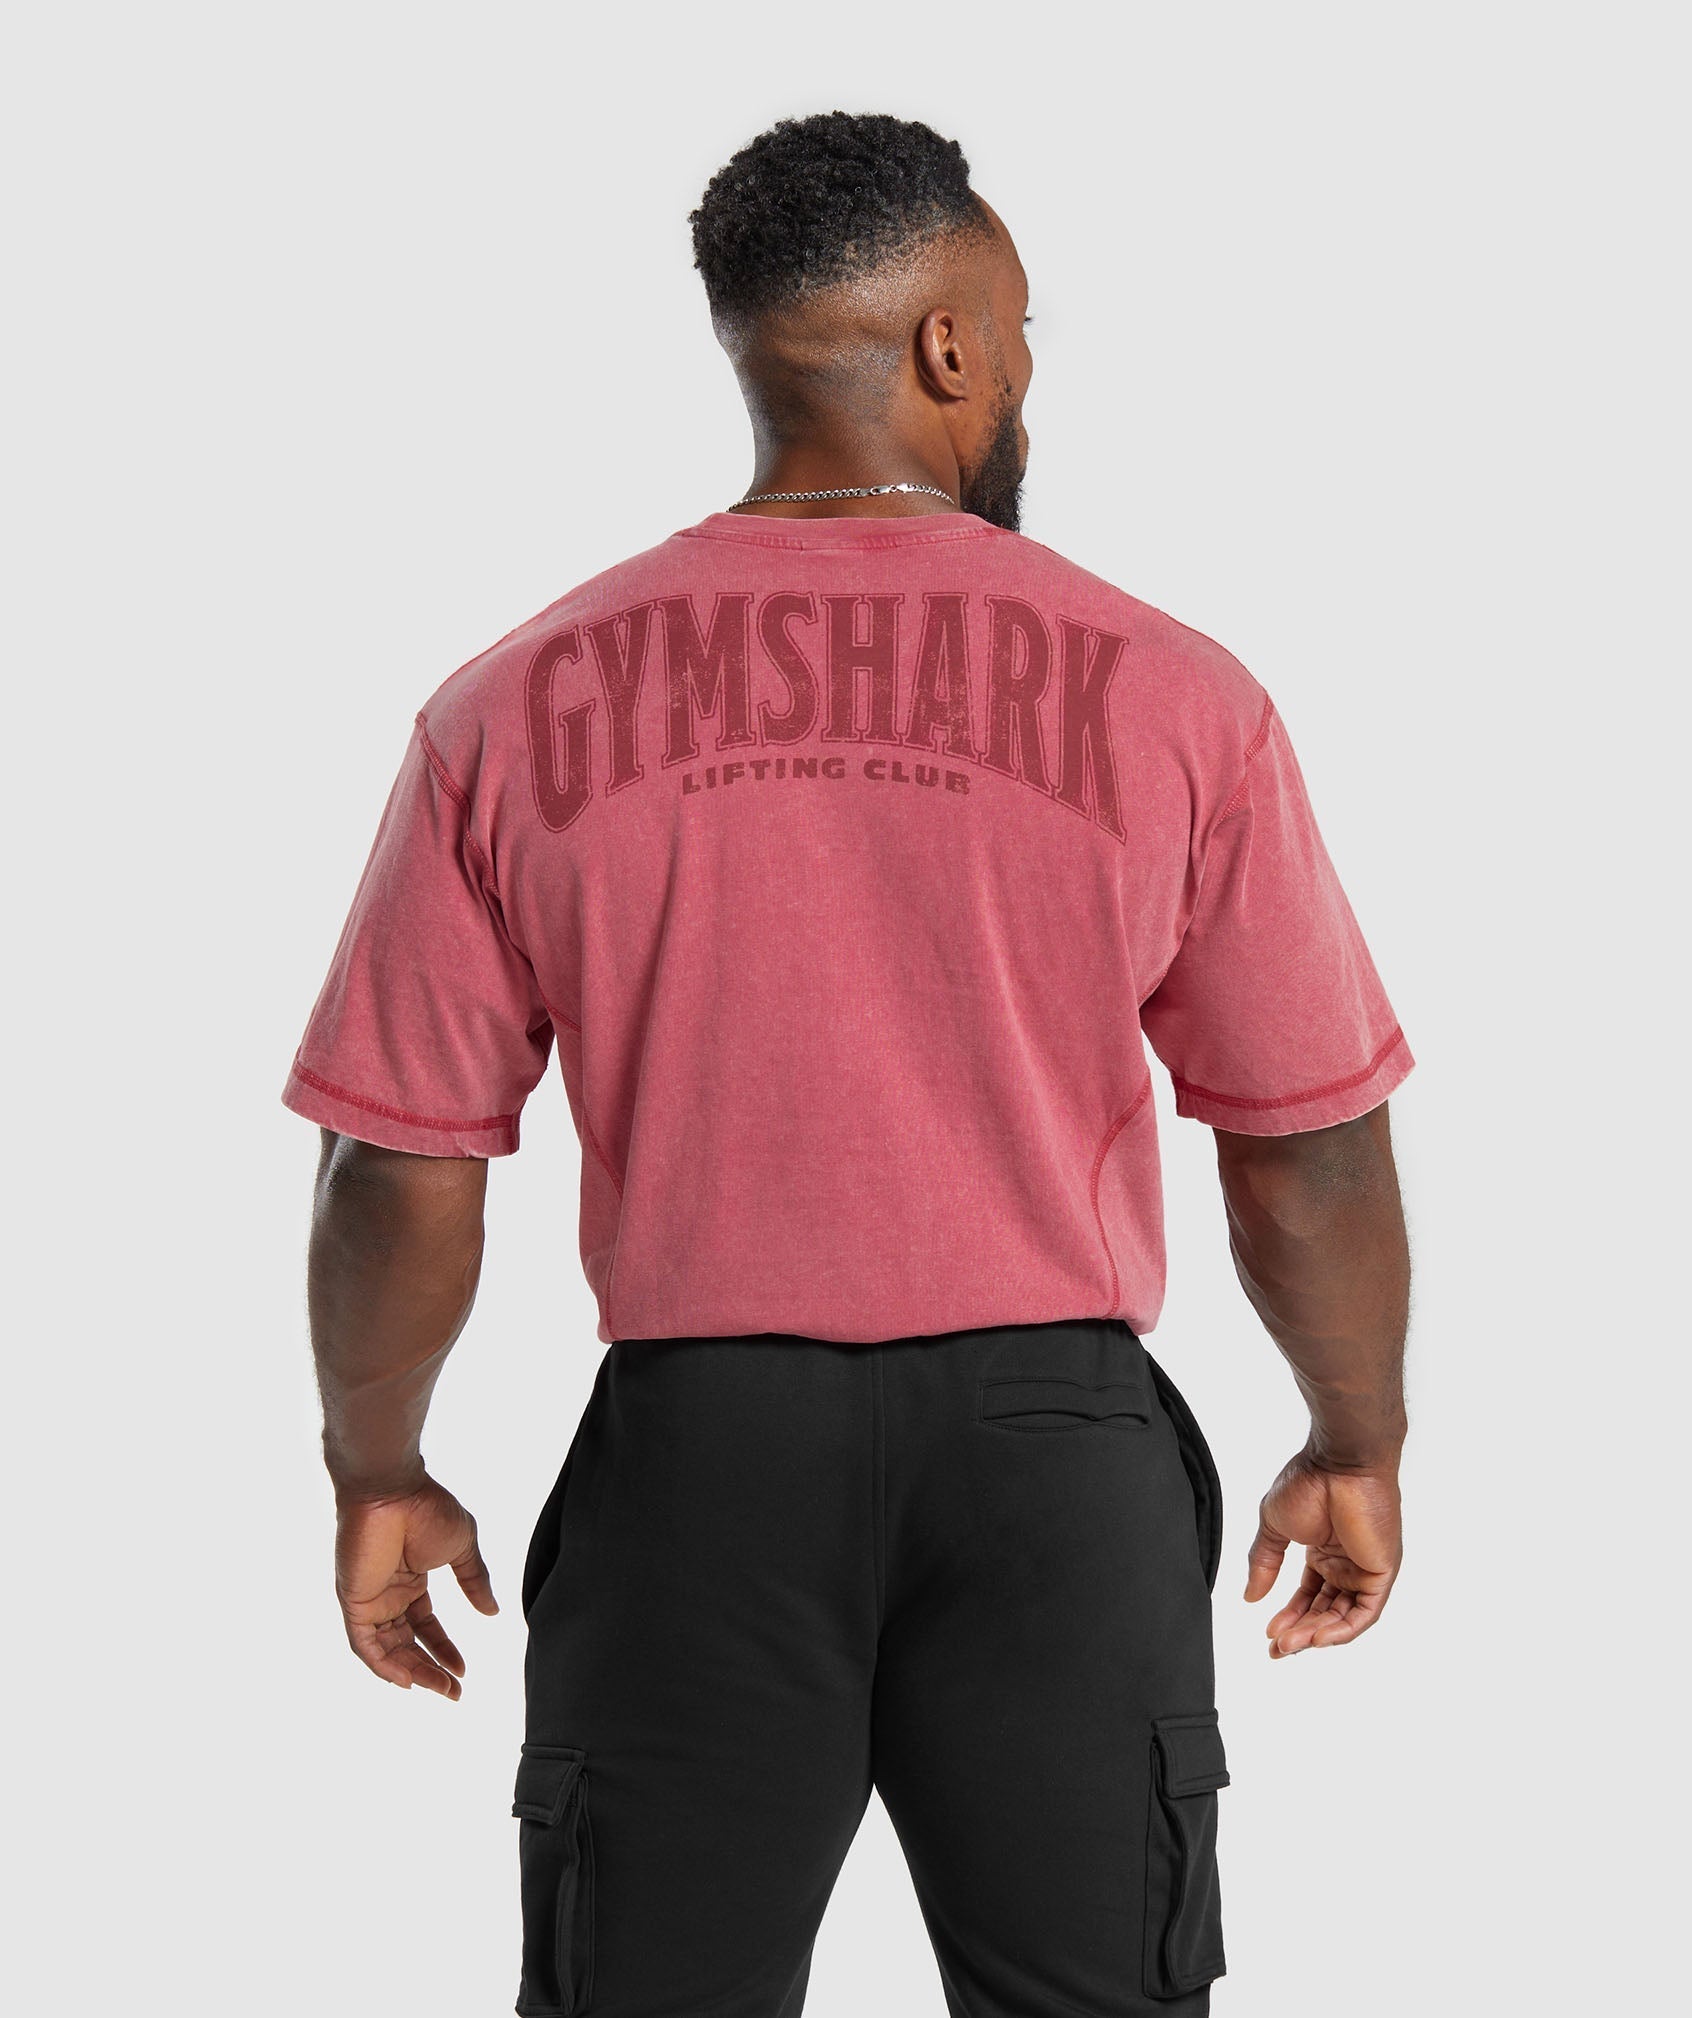 Gymshark Heritage Washed T-Shirt - Vintage Pink